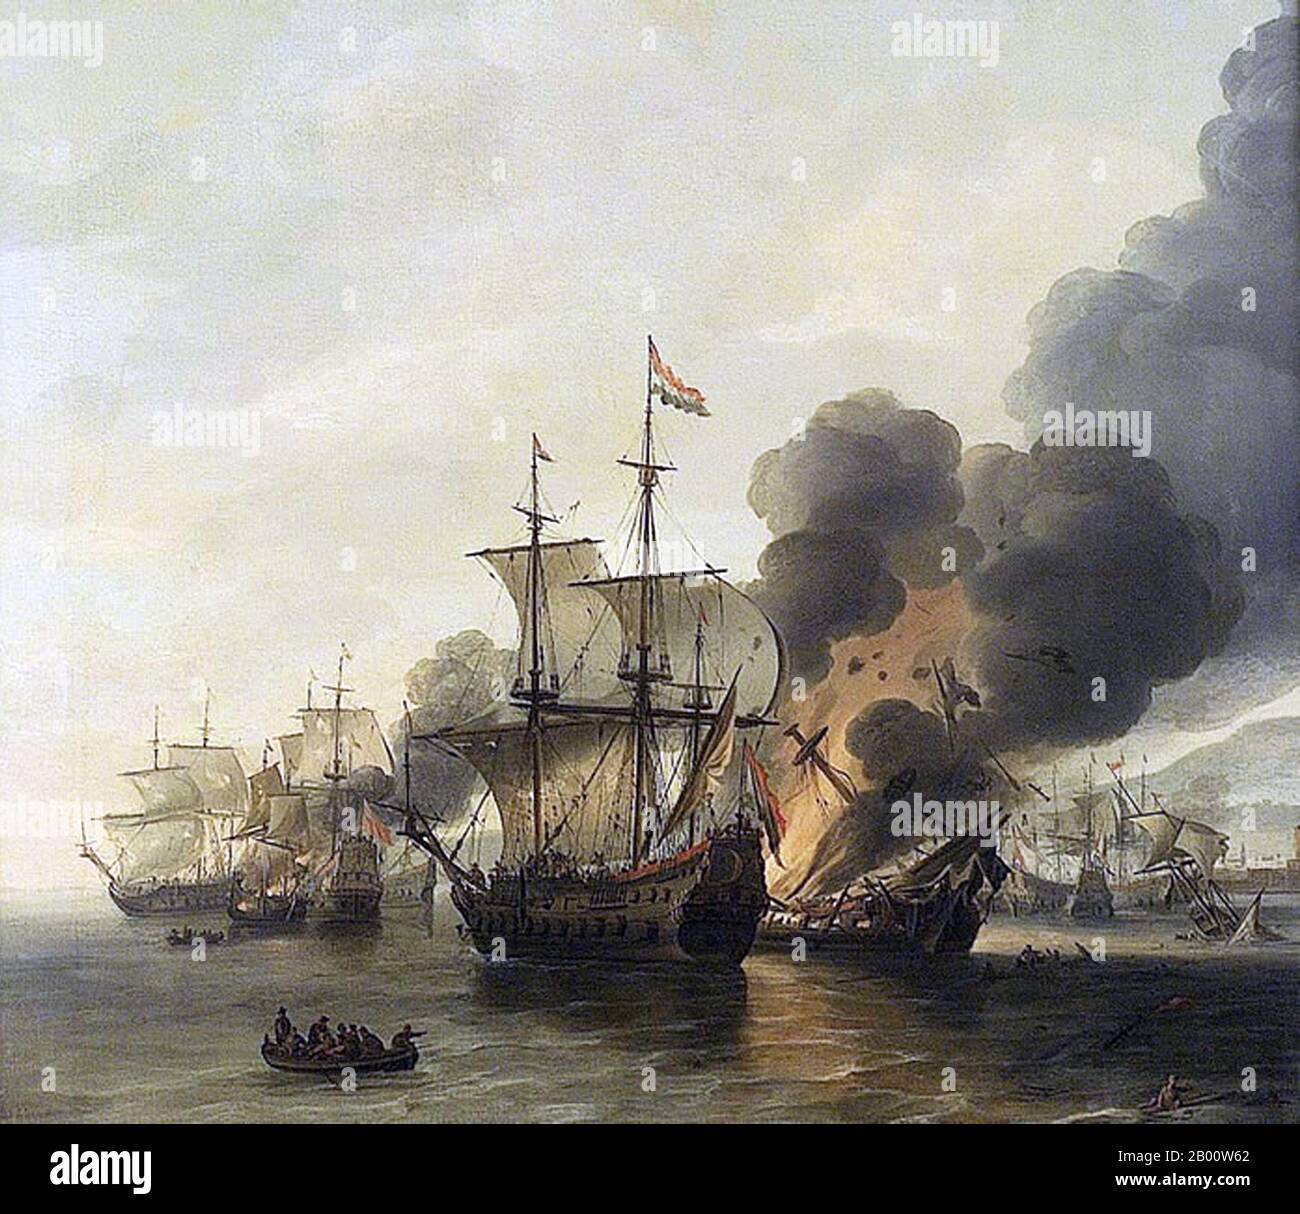 Maritime: 'Die Schlacht von Leghorn, 4. März 1653'. Öl auf Leinwand Gemälde von Willem Hermansz van Diest (c. 1600-1678), Mitte des 17. Jahrhunderts. Die Seeschlacht von Leghorn (die Holländer nennen die Begegnung mit dem italienischen Namen Livorno) fand am 14. März (4. März Old Style) 1653, während des ersten Anglo-Niederländischen Krieges, in der Nähe von Leghorn (Livorno), Italien. Es war ein Sieg einer holländischen Flotte unter Commodore Johan van Galen über eine englische Staffel unter Captain Henry Appleton. Danach kam eine englische Flotte unter Kapitän Richard Badiley, die Appleton zu erreichen versucht hatte, aber war unternumeriert und floh. Stockfoto